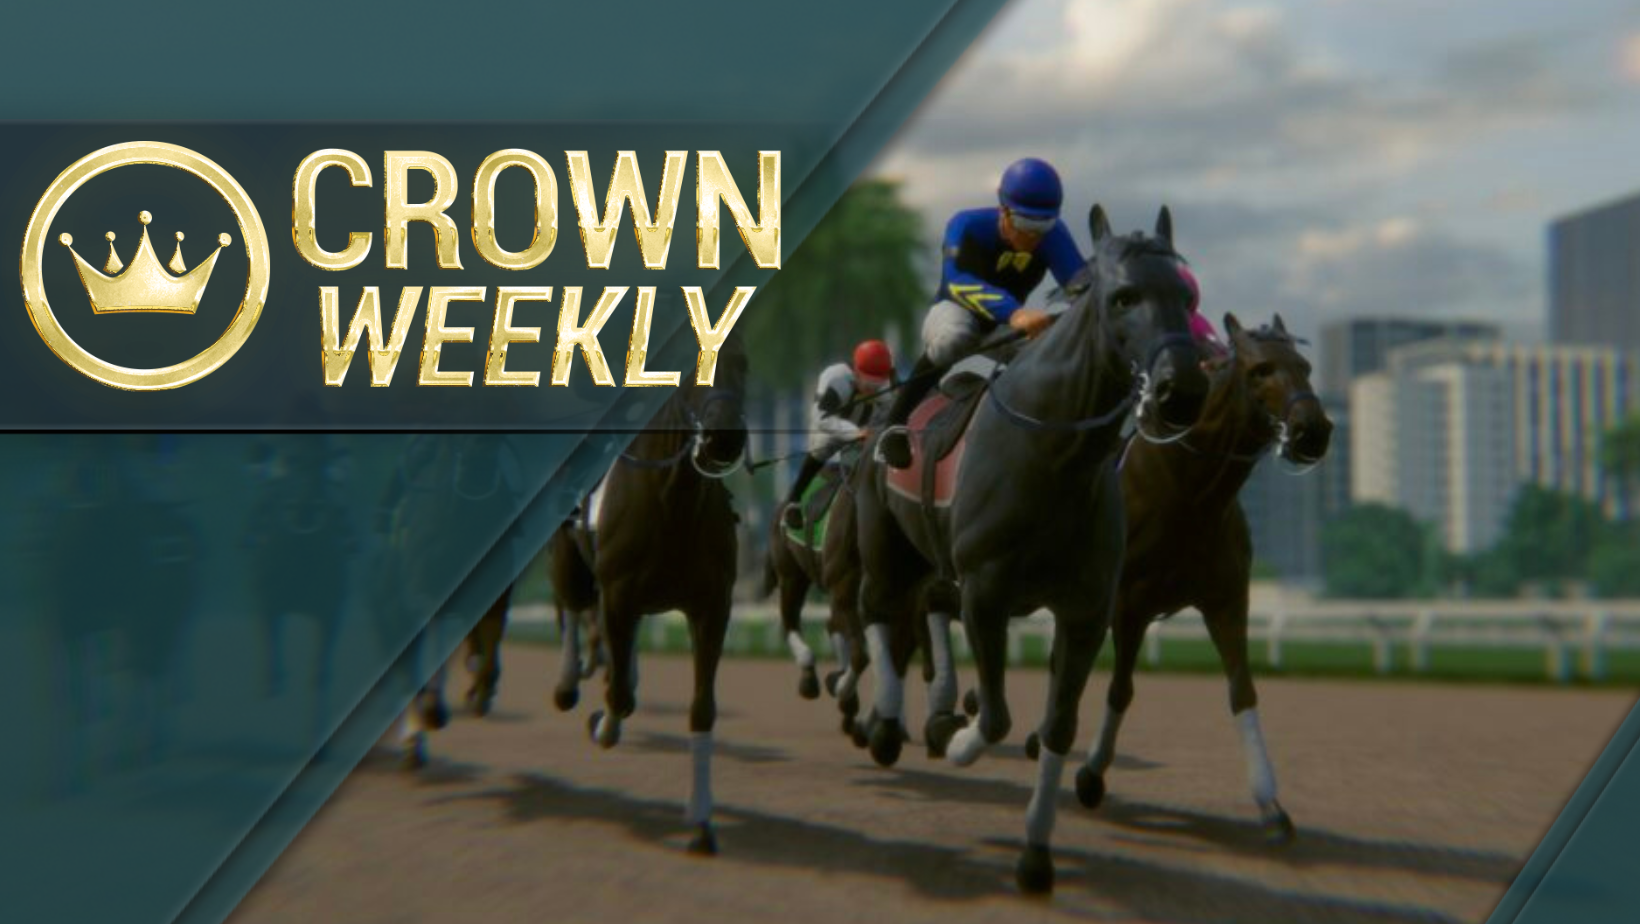 Crown Weekly: This Week’s Look Ahead